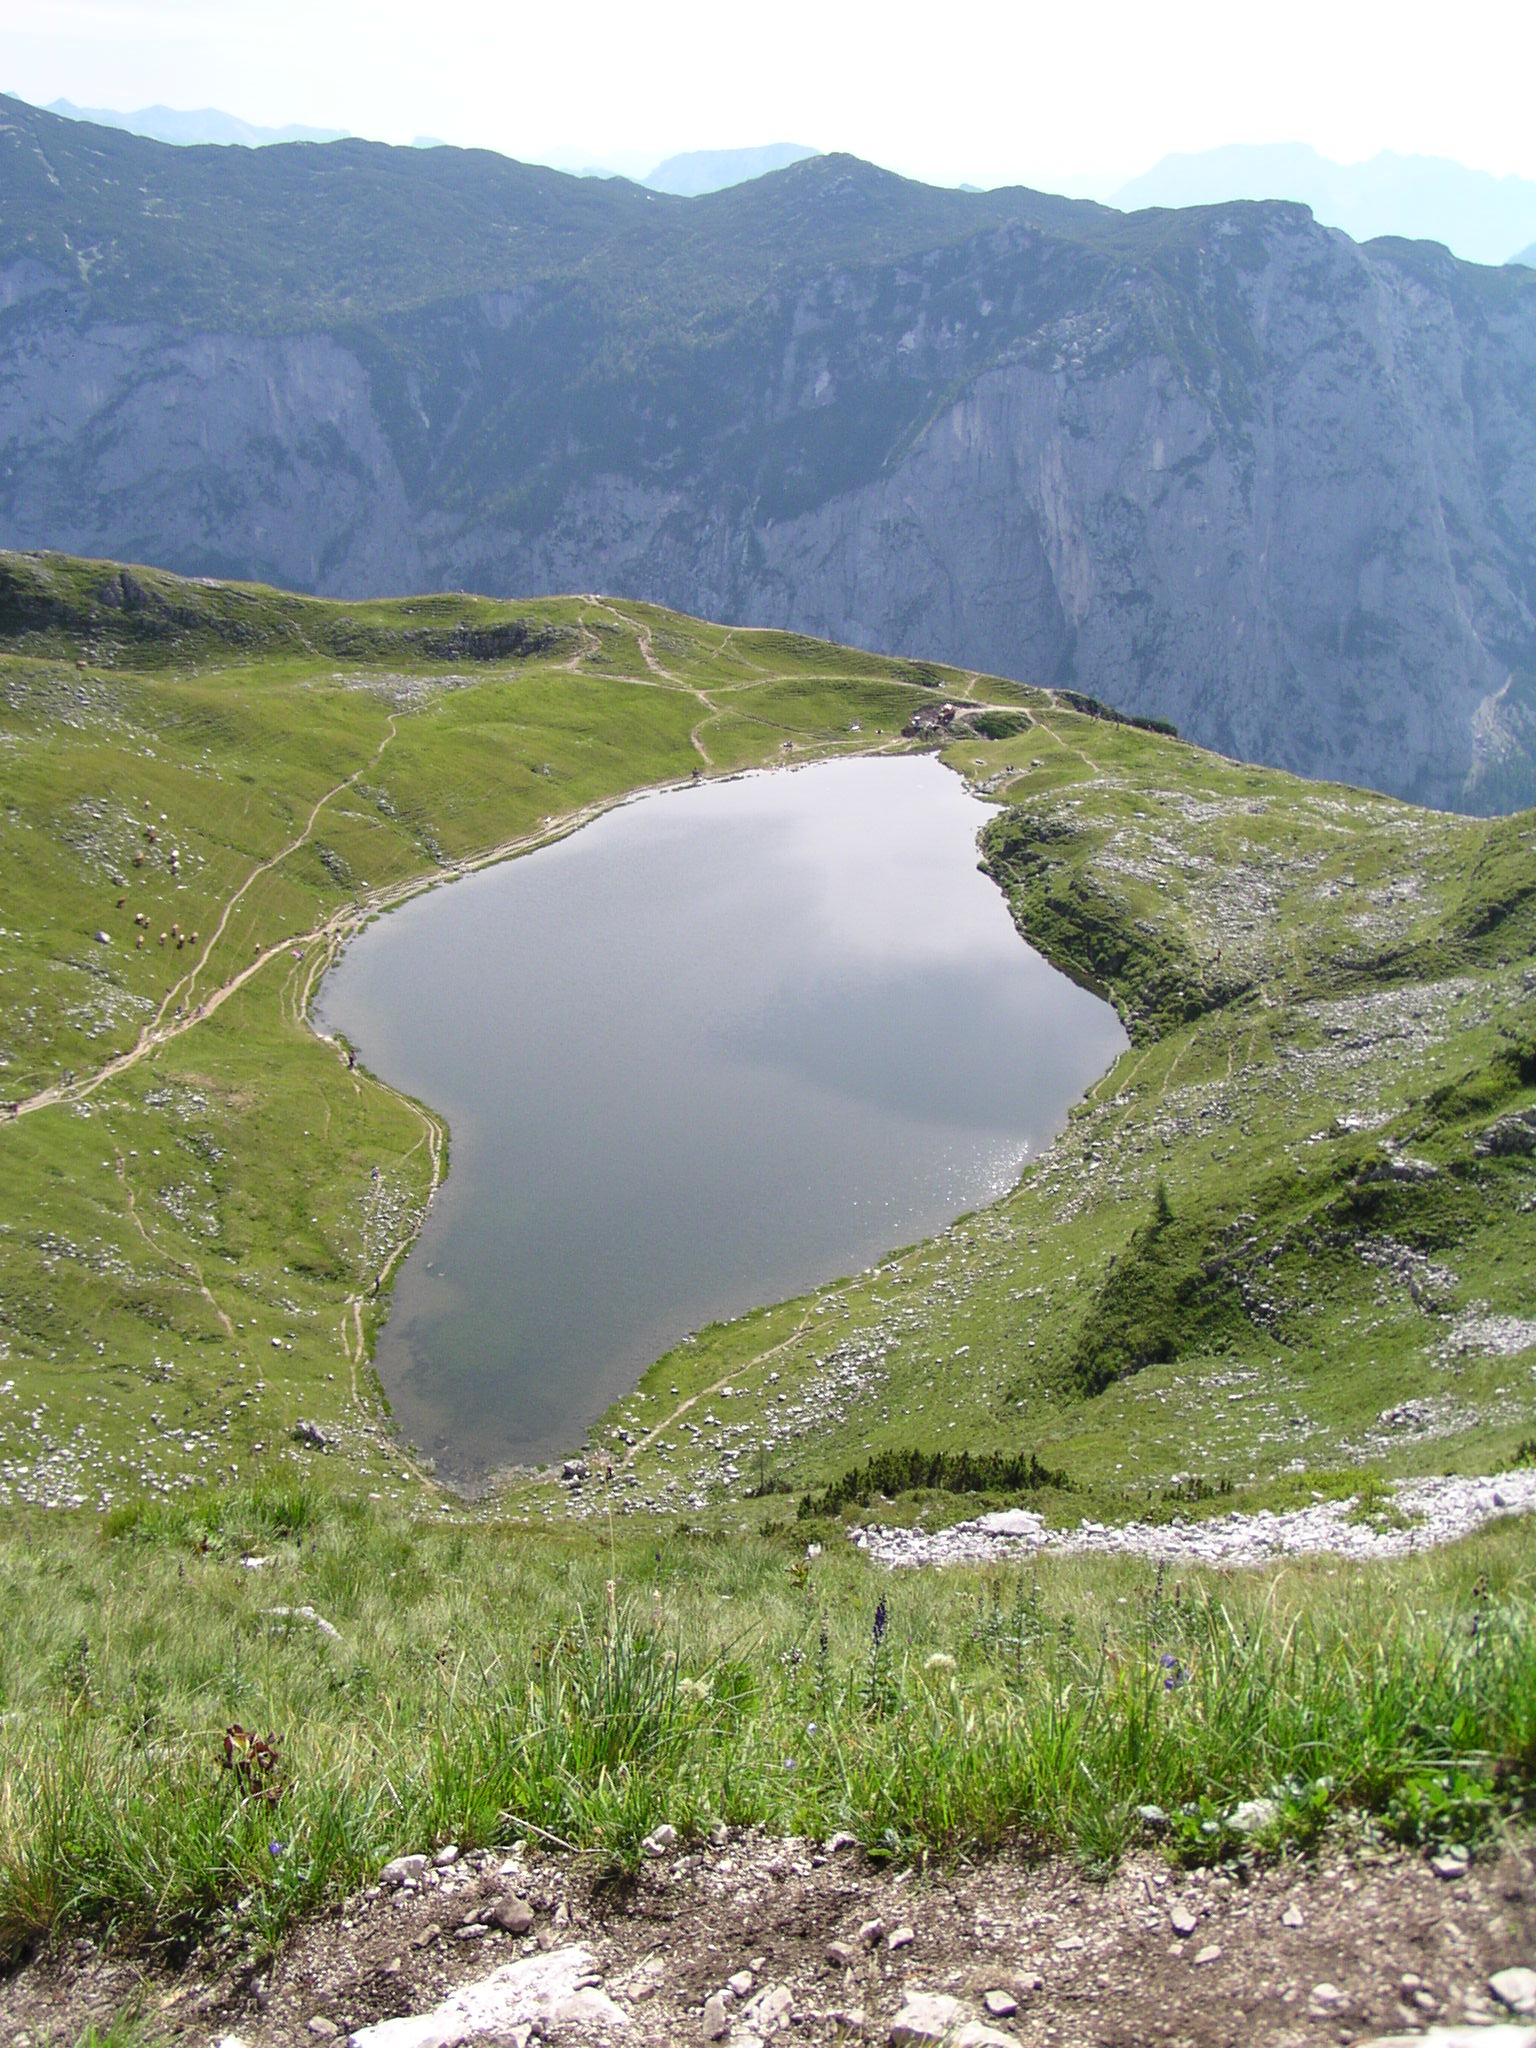 Der Augstsee in der österreichischen Steiermark ist ein Beispiel für einen Karsee. Hier formte einst ein Gletscher eine Mulde in den Fels. Als der Gletscher verschwand, entstand in der Mulde ein See vor der steil abfallenden Felskante. Bild: Wikimedia commons / Christian Jansky